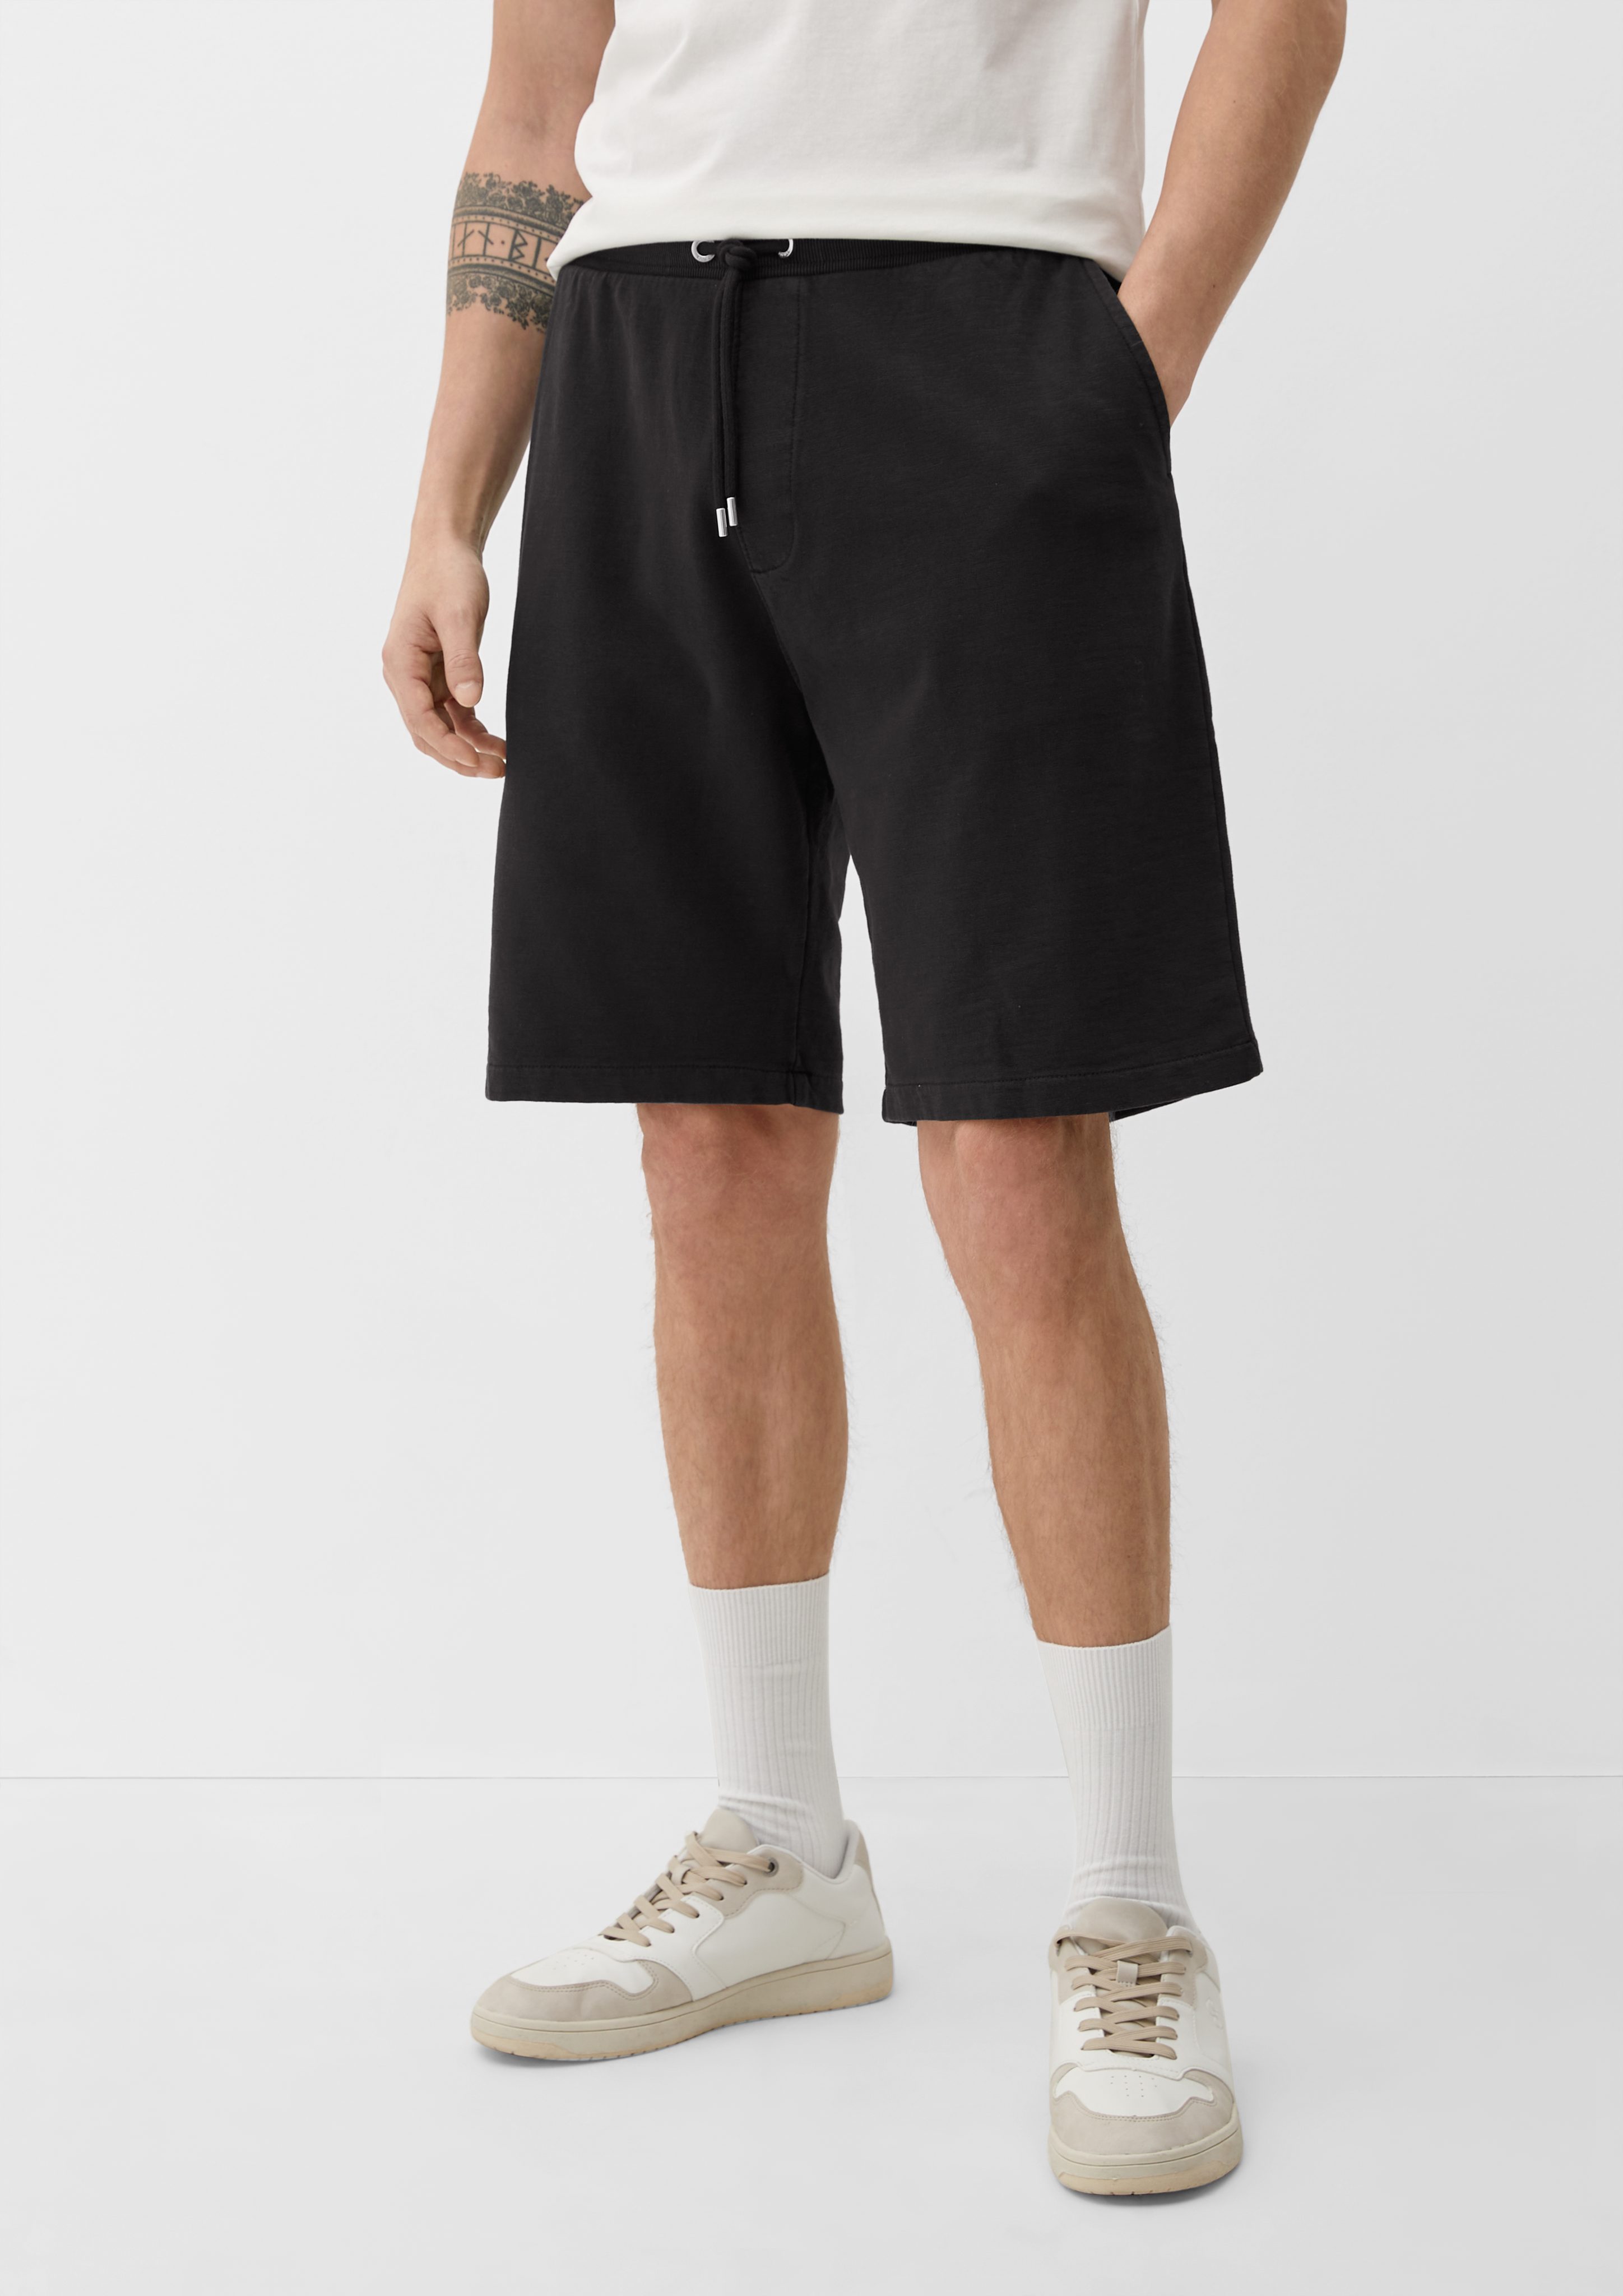 s.Oliver Bermudas Relaxed: Sweatpants mit Elastikbund Durchzugkordel, Garment Dye, Label-Patch schwarz | Bermudas